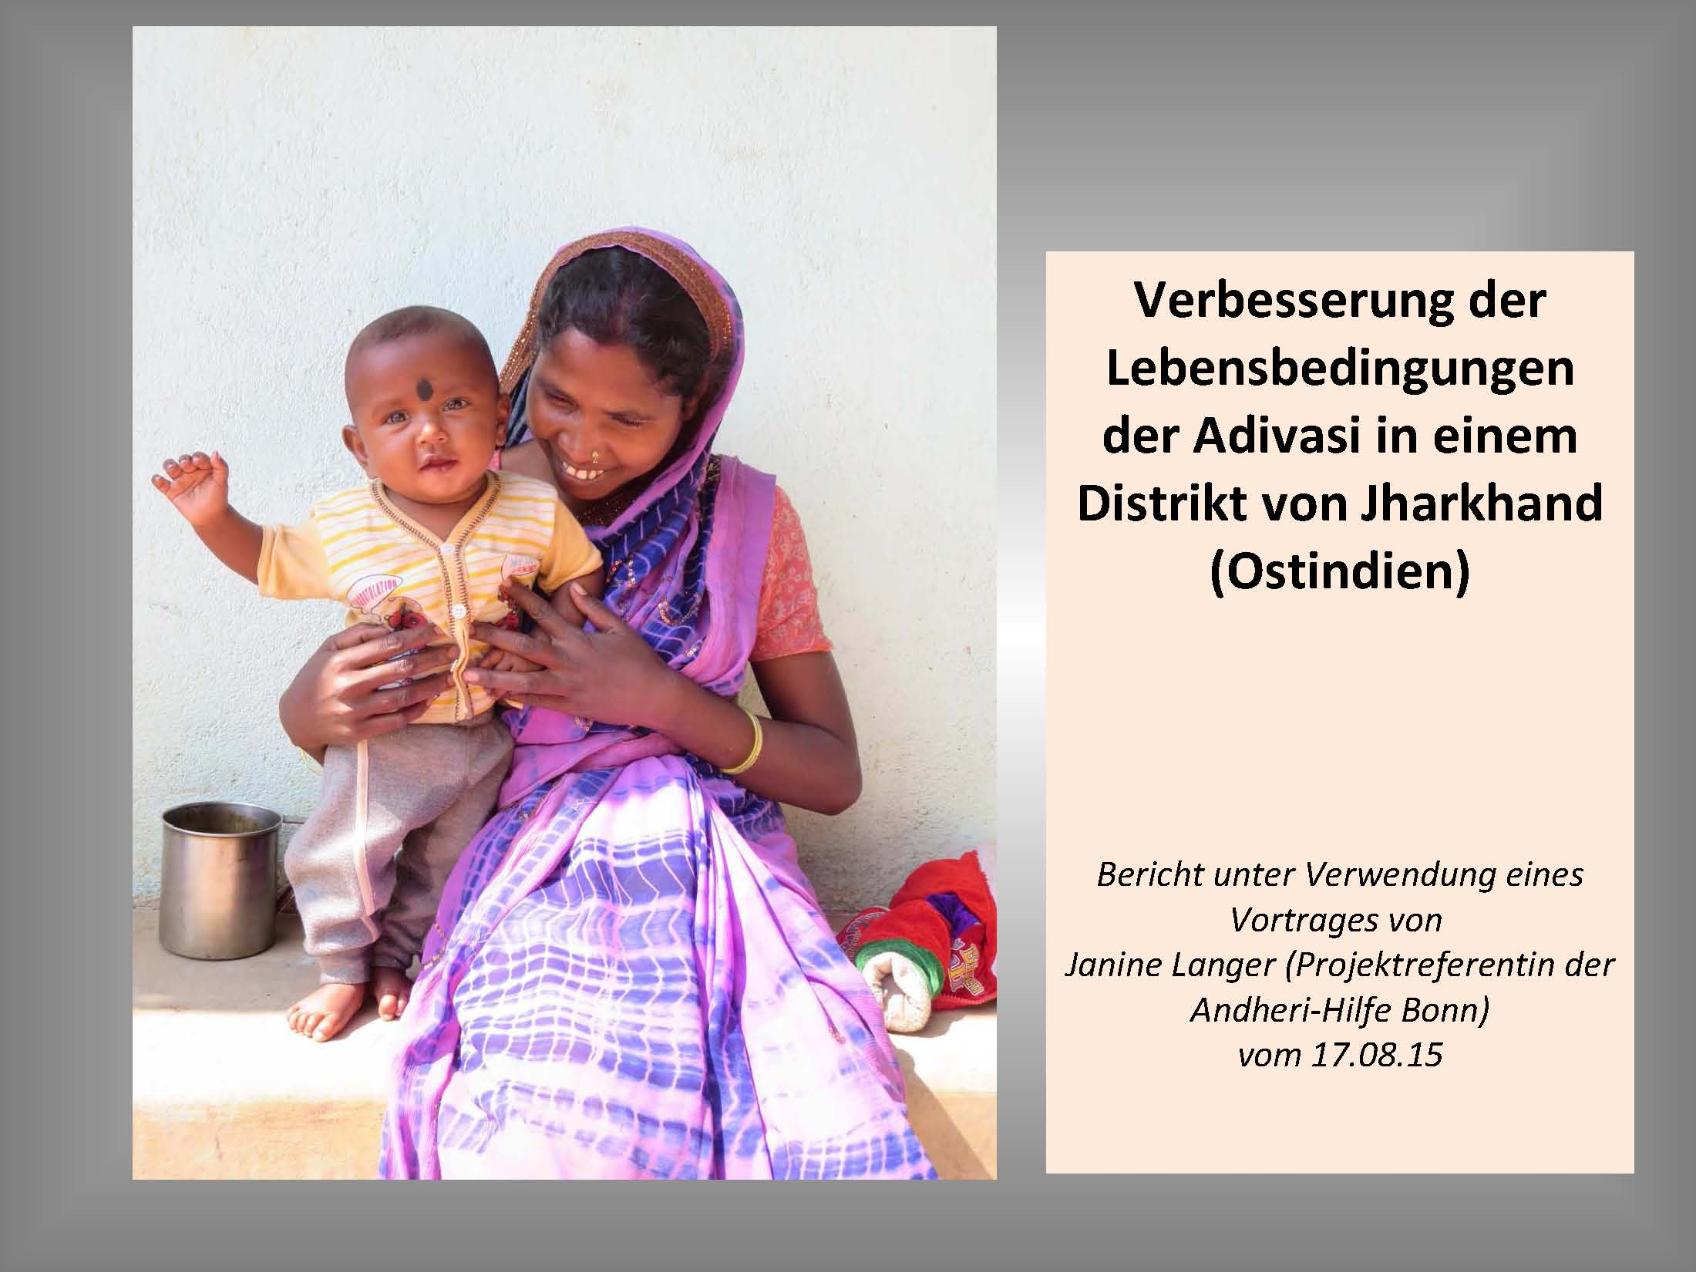 Präsentation: Verbesserung der Lebensbedingungen der Adivasi in einem Distrikt von Jharkhand (Ostindien) (c) Janine Langer (Projektreferentin der Andheri-Hilfe Bonn) / Eifeler Brunnenhilfe